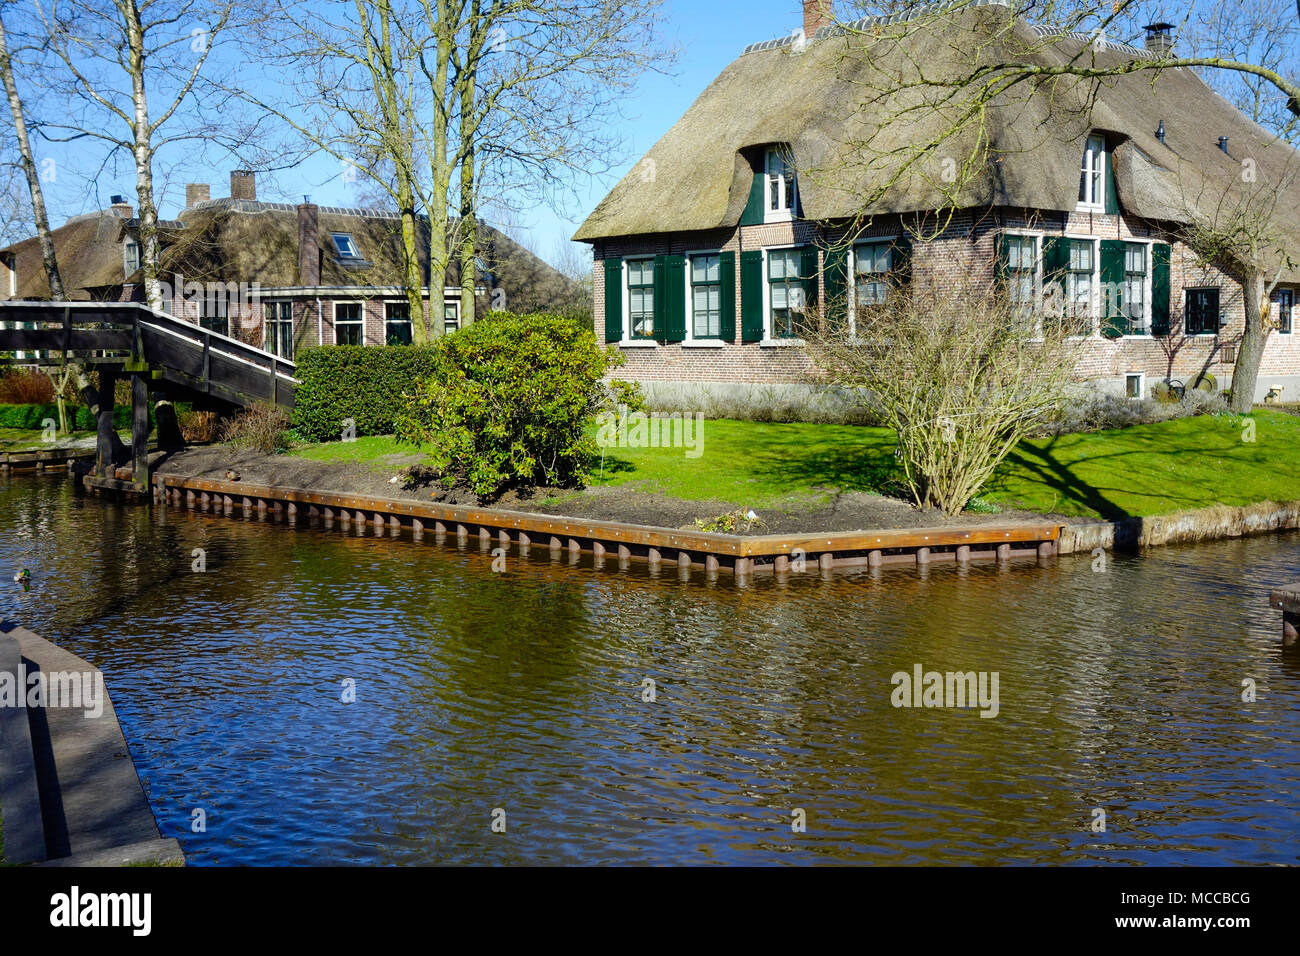 Giethoorn Village - Les Pays-Bas, également connu comme la Venise de la Hollande. Banque D'Images